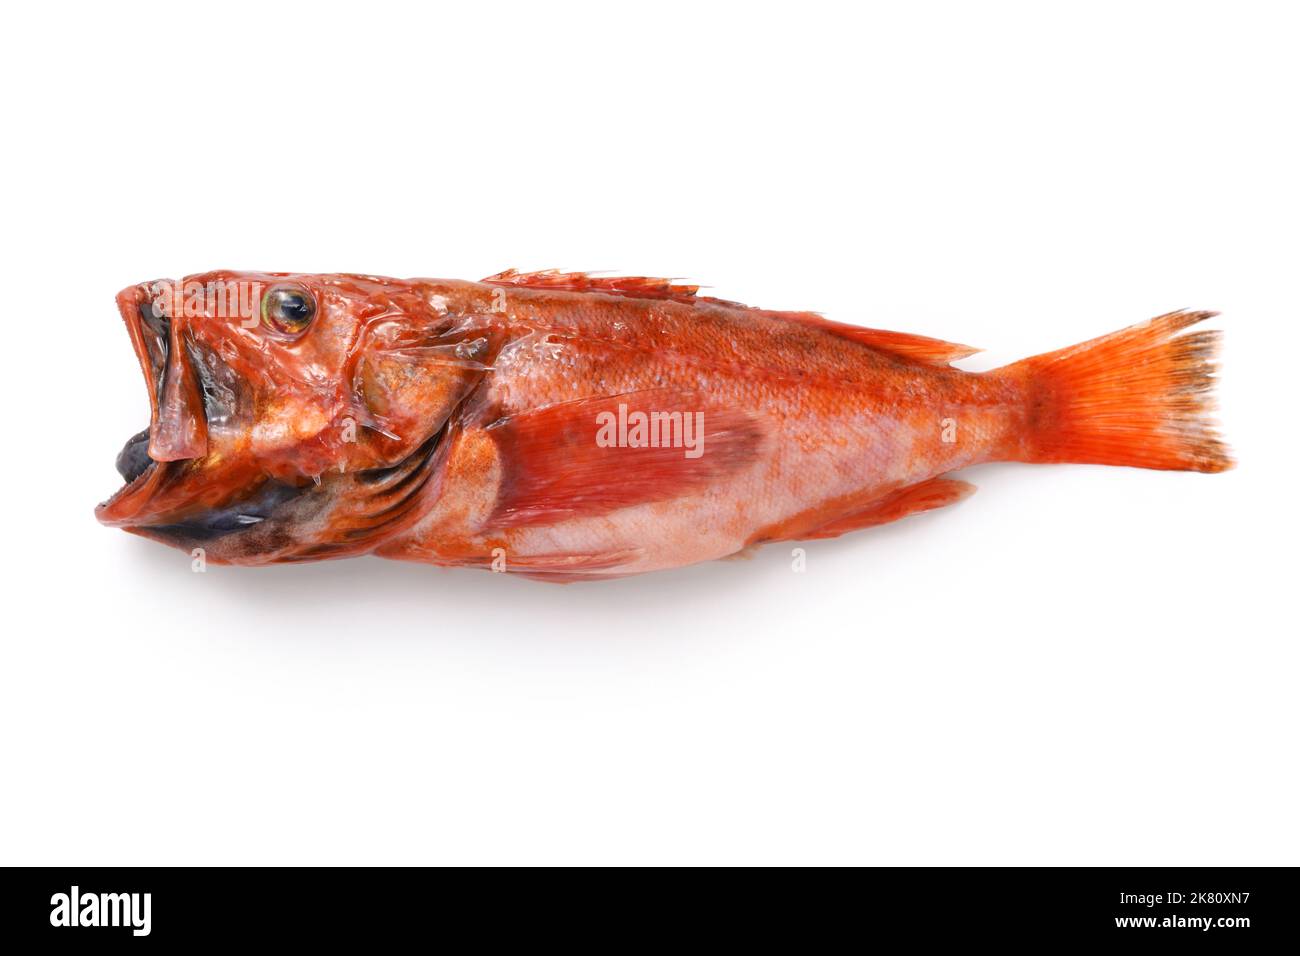 Deliciosos peces de aguas profundas que todavía no son famosos (Red deepwater scorpionfish) aislados sobre fondo blanco Foto de stock